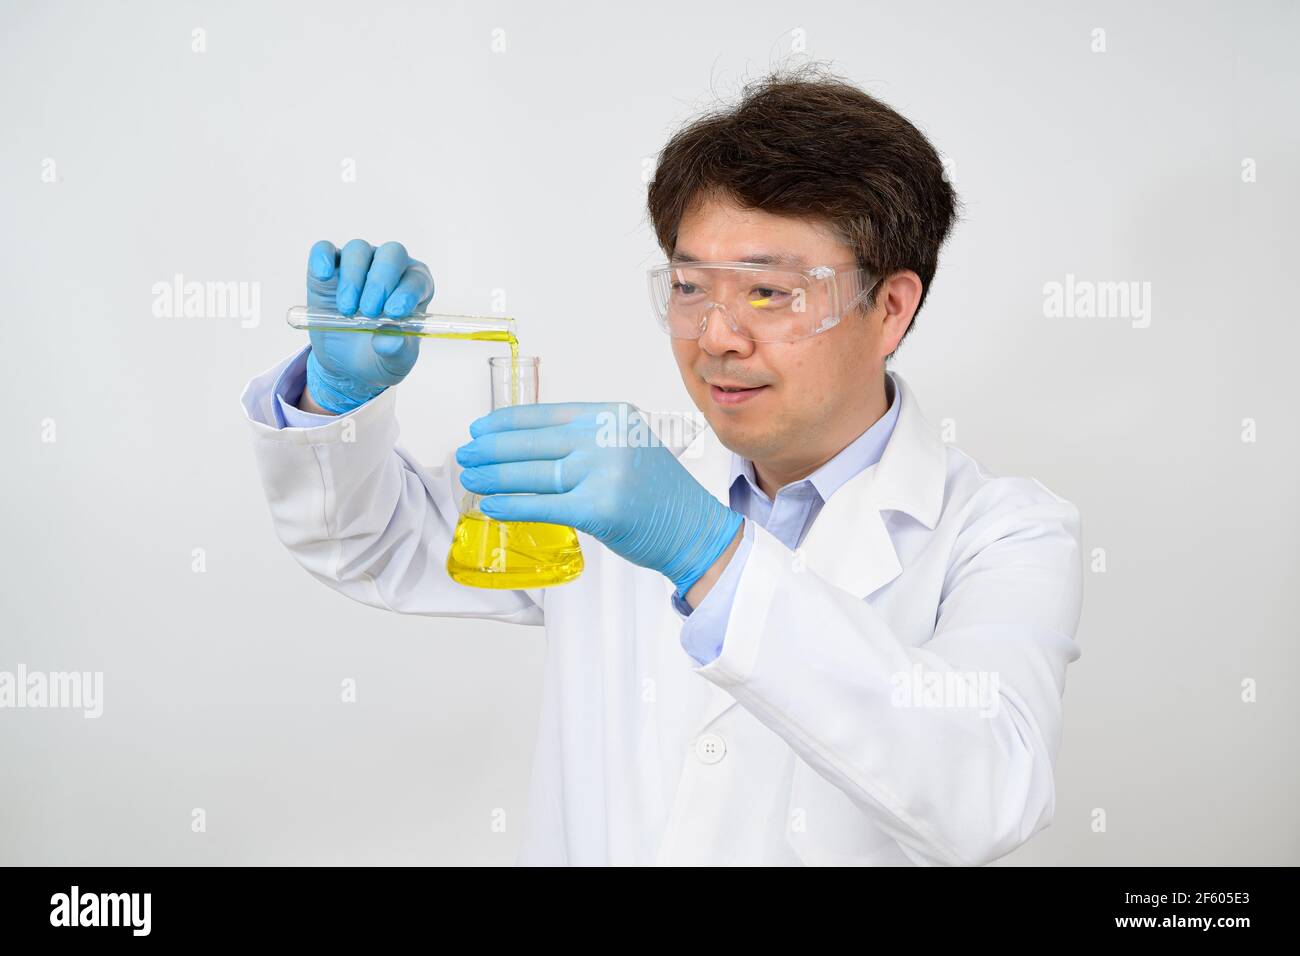 Portrait d'un scientifique asiatique de milieu d'année portant une blouse de laboratoire blanche et des gants et tenant un conteneur expérimental dans la main. Banque D'Images